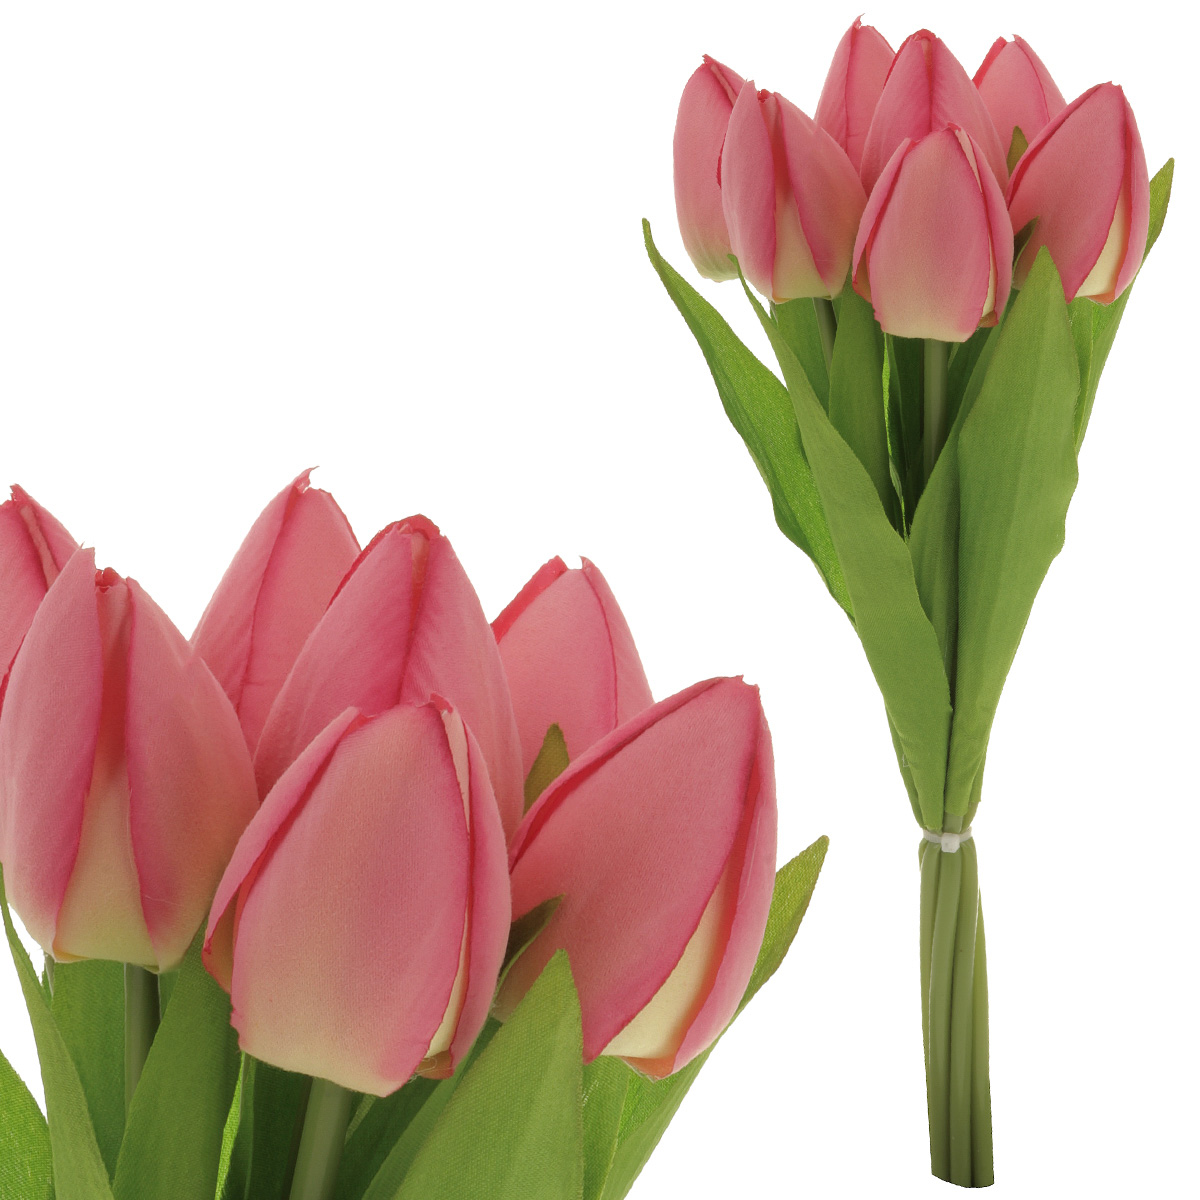 Puget tulipánů, 7 květů, barva růžová.